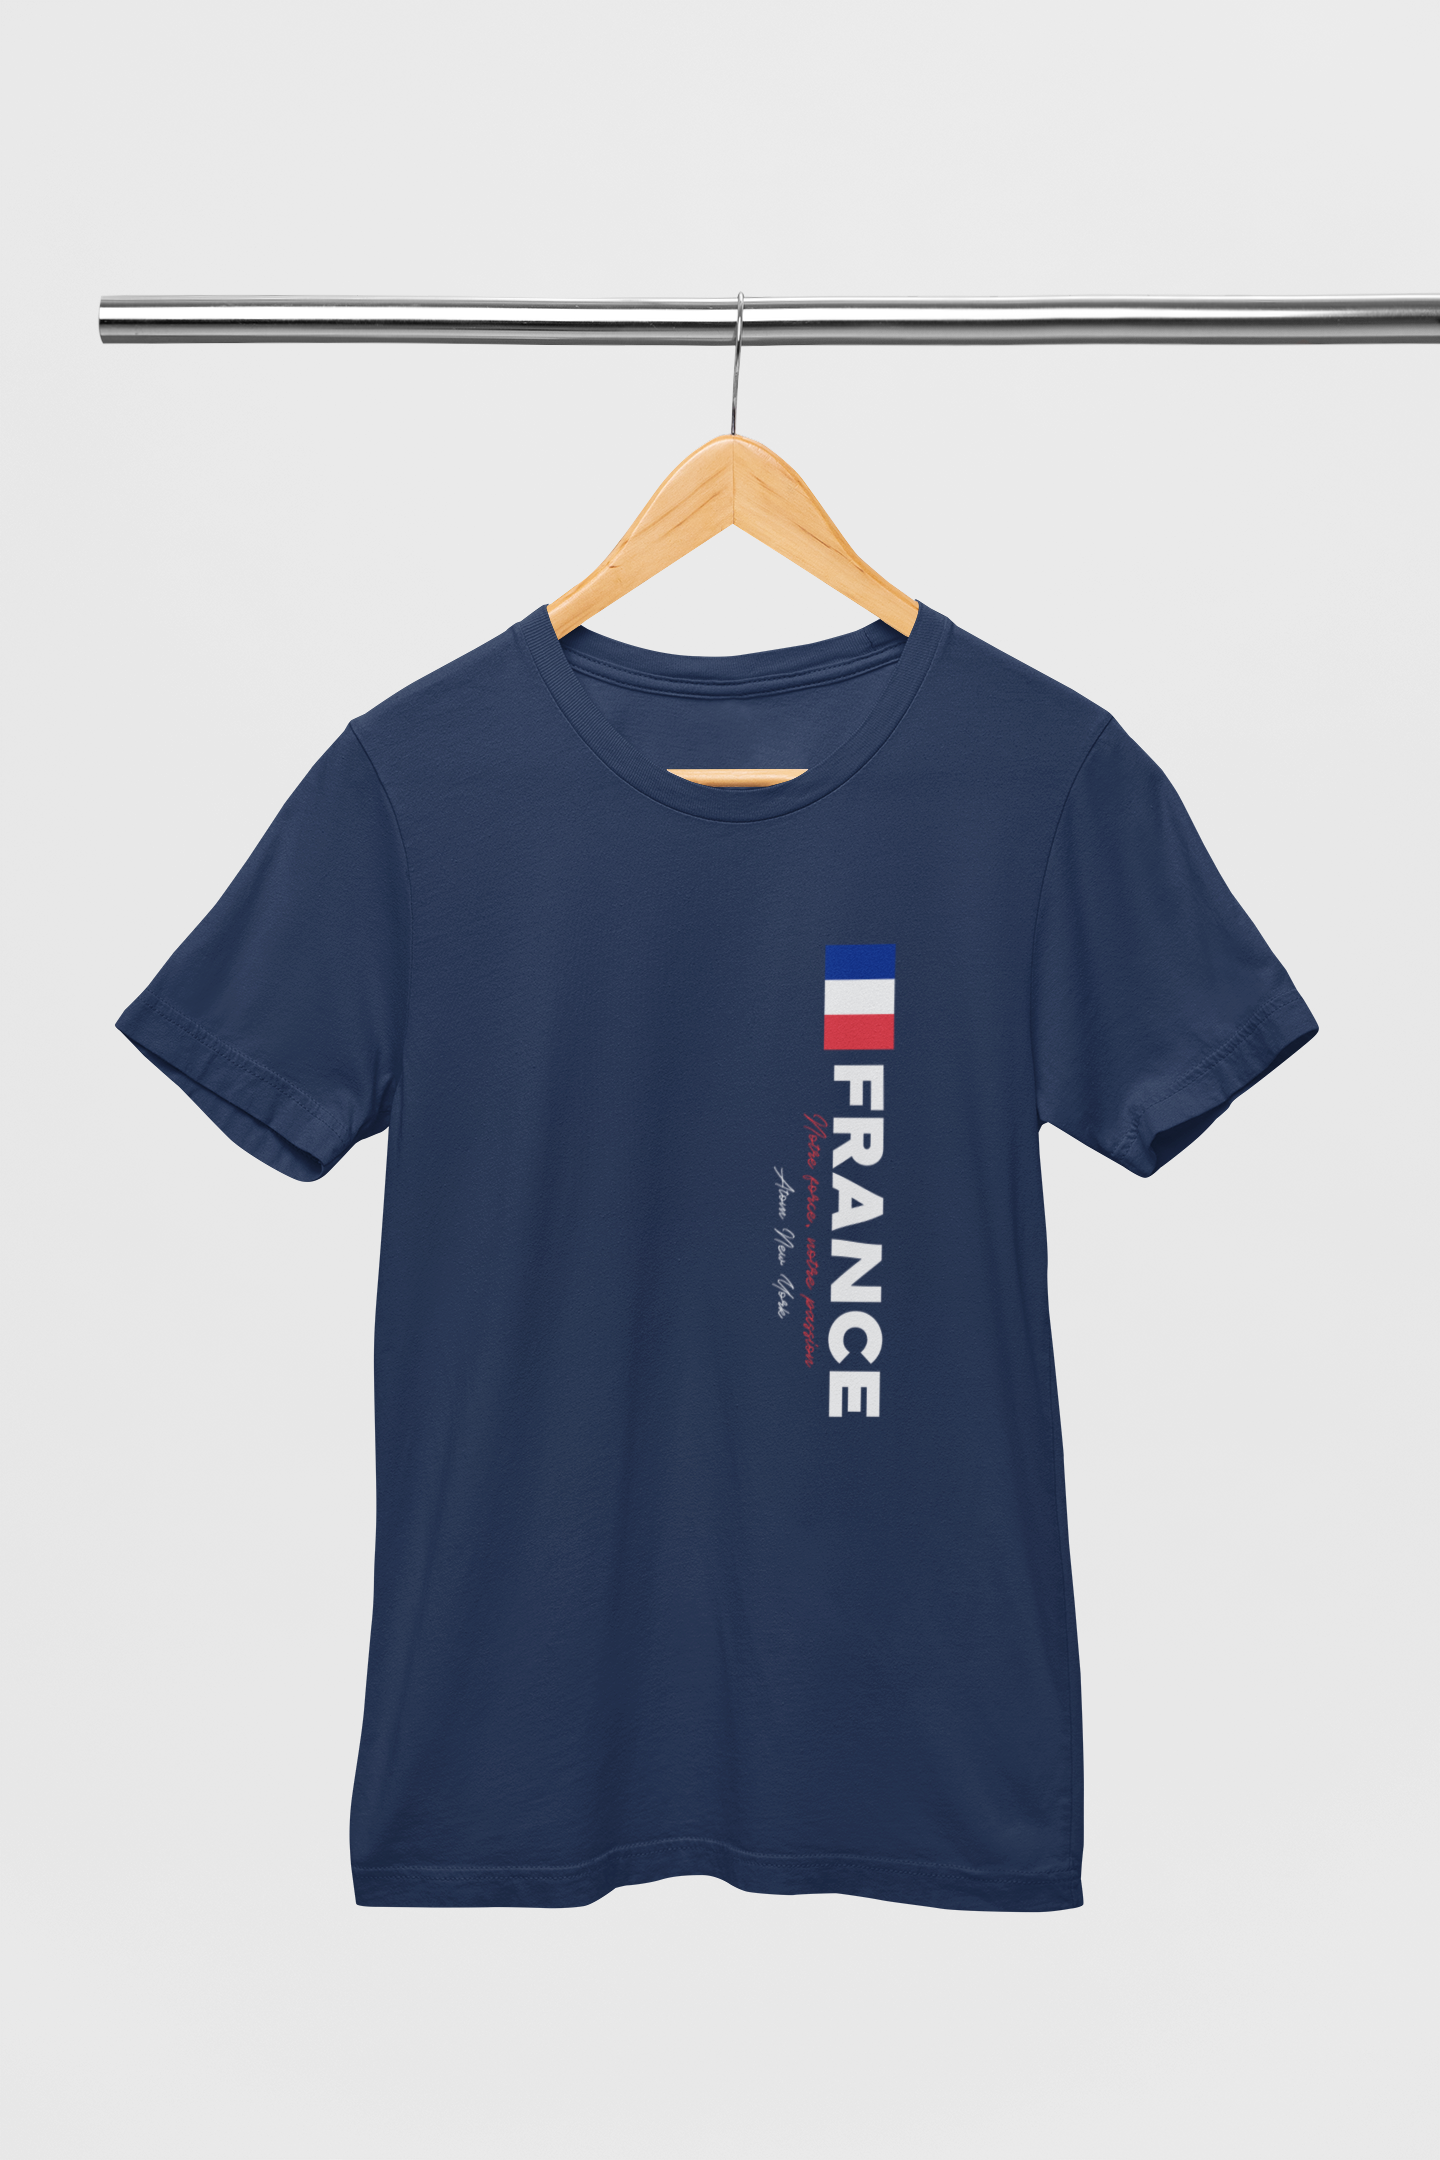 ATOM New York France Navy Blue T-Shirt For Men